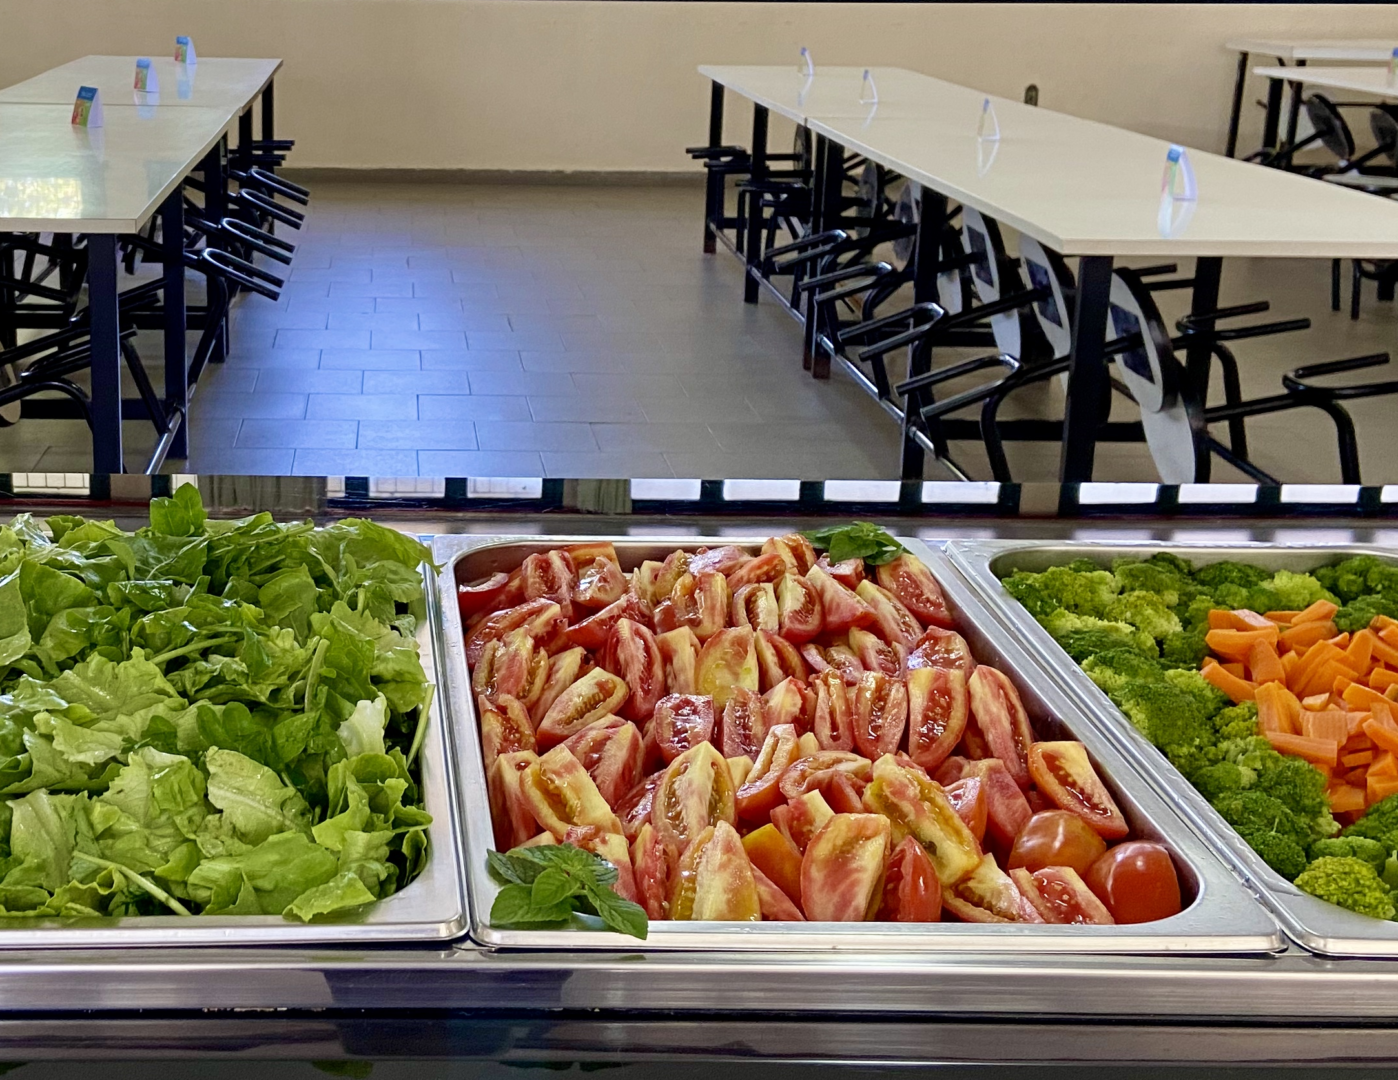 Os desafios da alimentação vegetariana nas unidades escolares - Instituto  de Nutrição e Alimentação Escolar